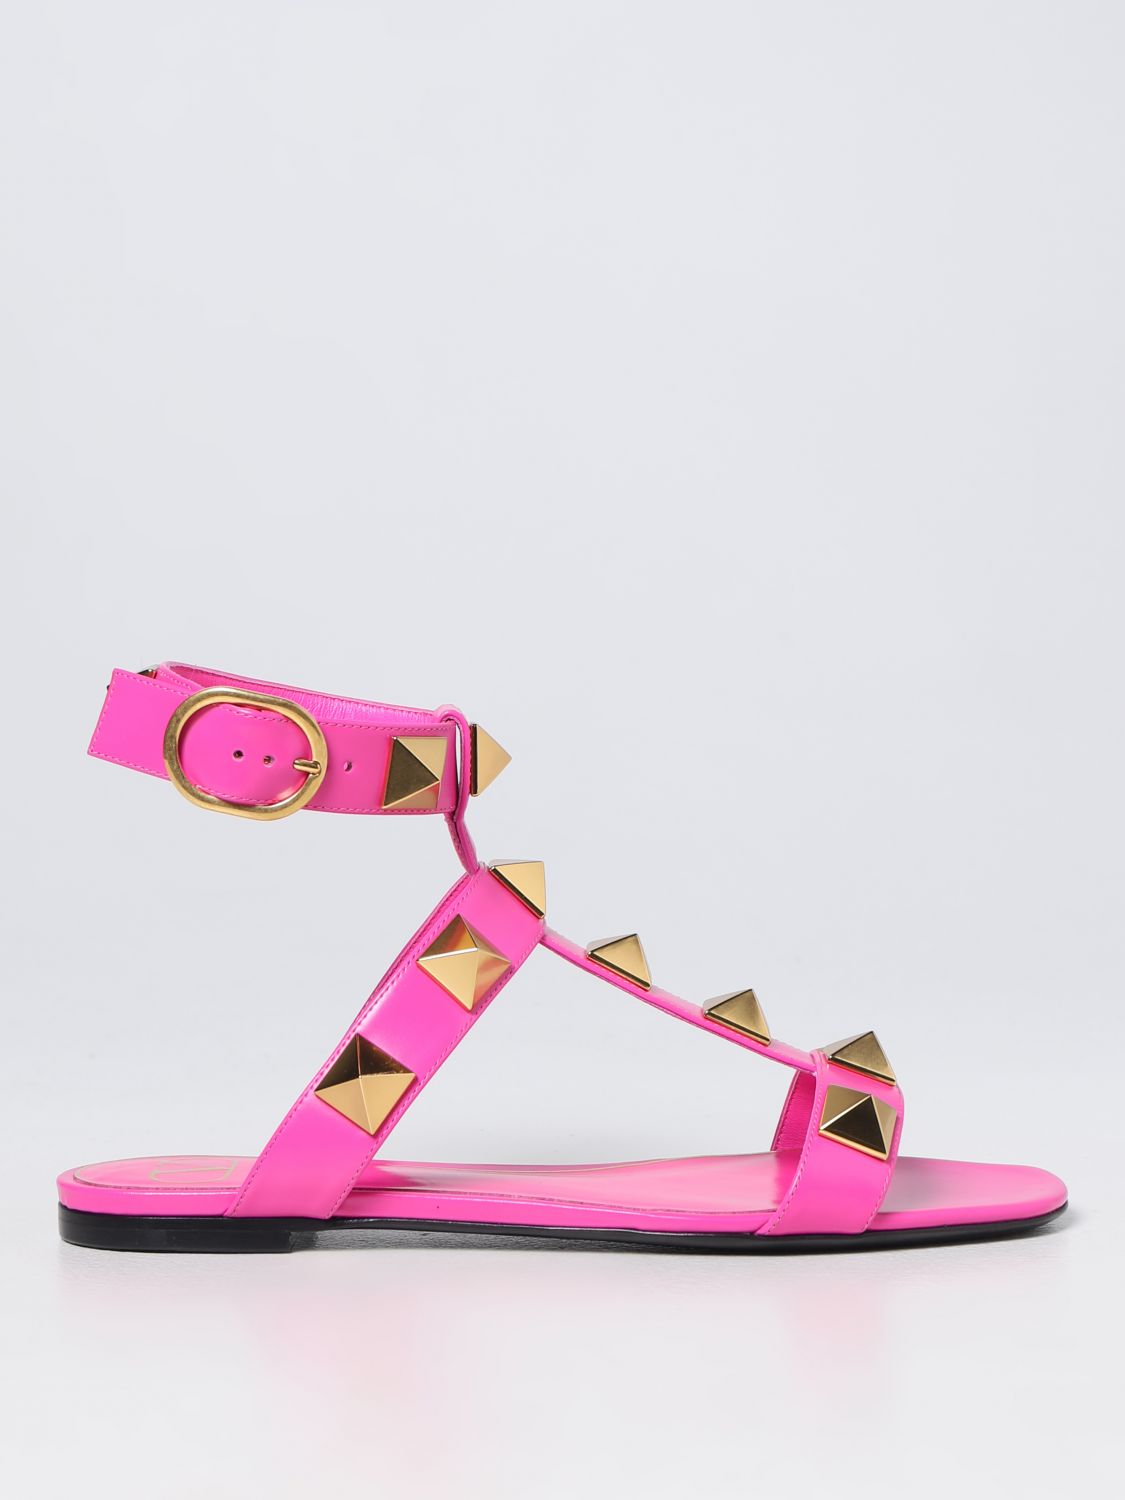 VALENTINO GARAVANI: Roman Stud sandals in leather - Pink | Valentino Garavani flat 2W2S0BU8ZWM online at GIGLIO.COM